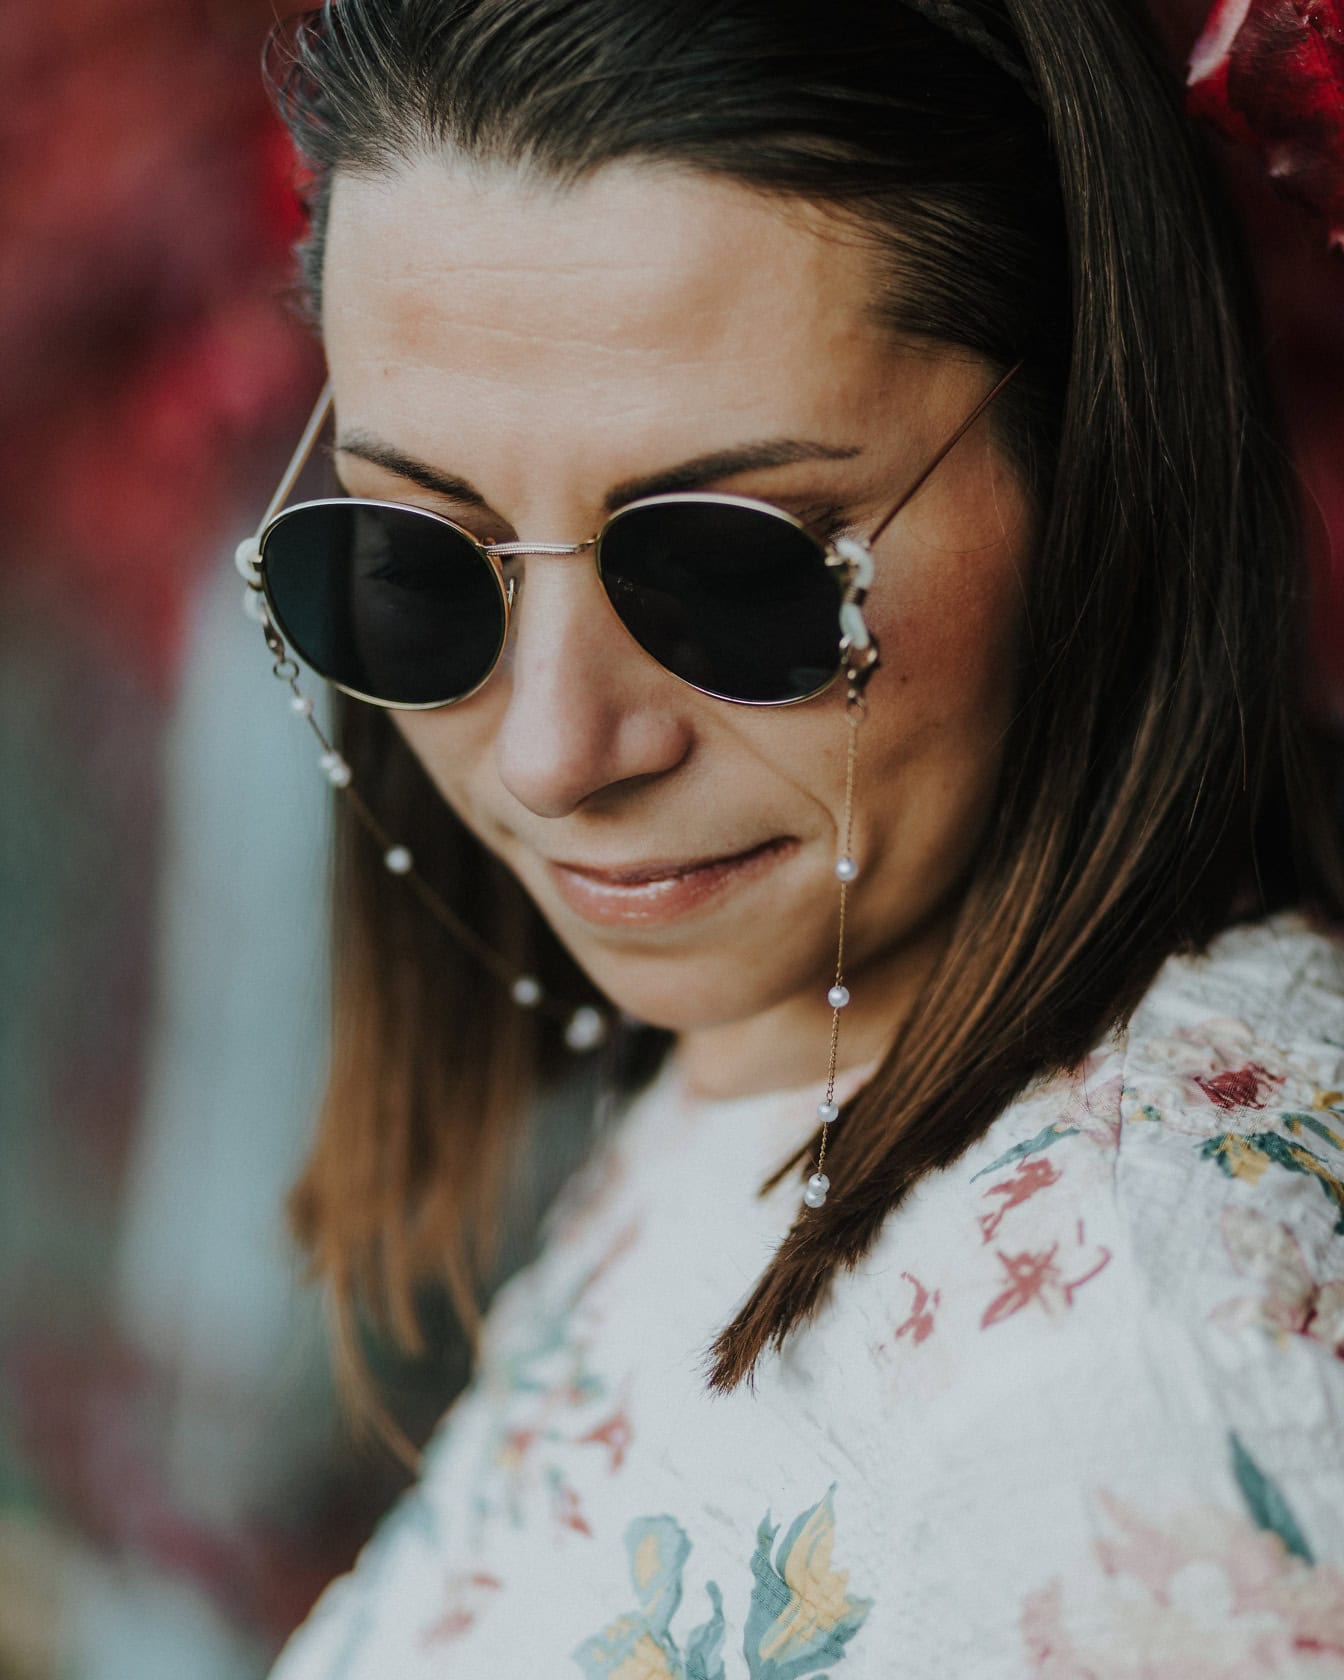 Ansiktsportrett av en ung kvinne med solbriller i John Lennon-stil og blomstrete skjorte